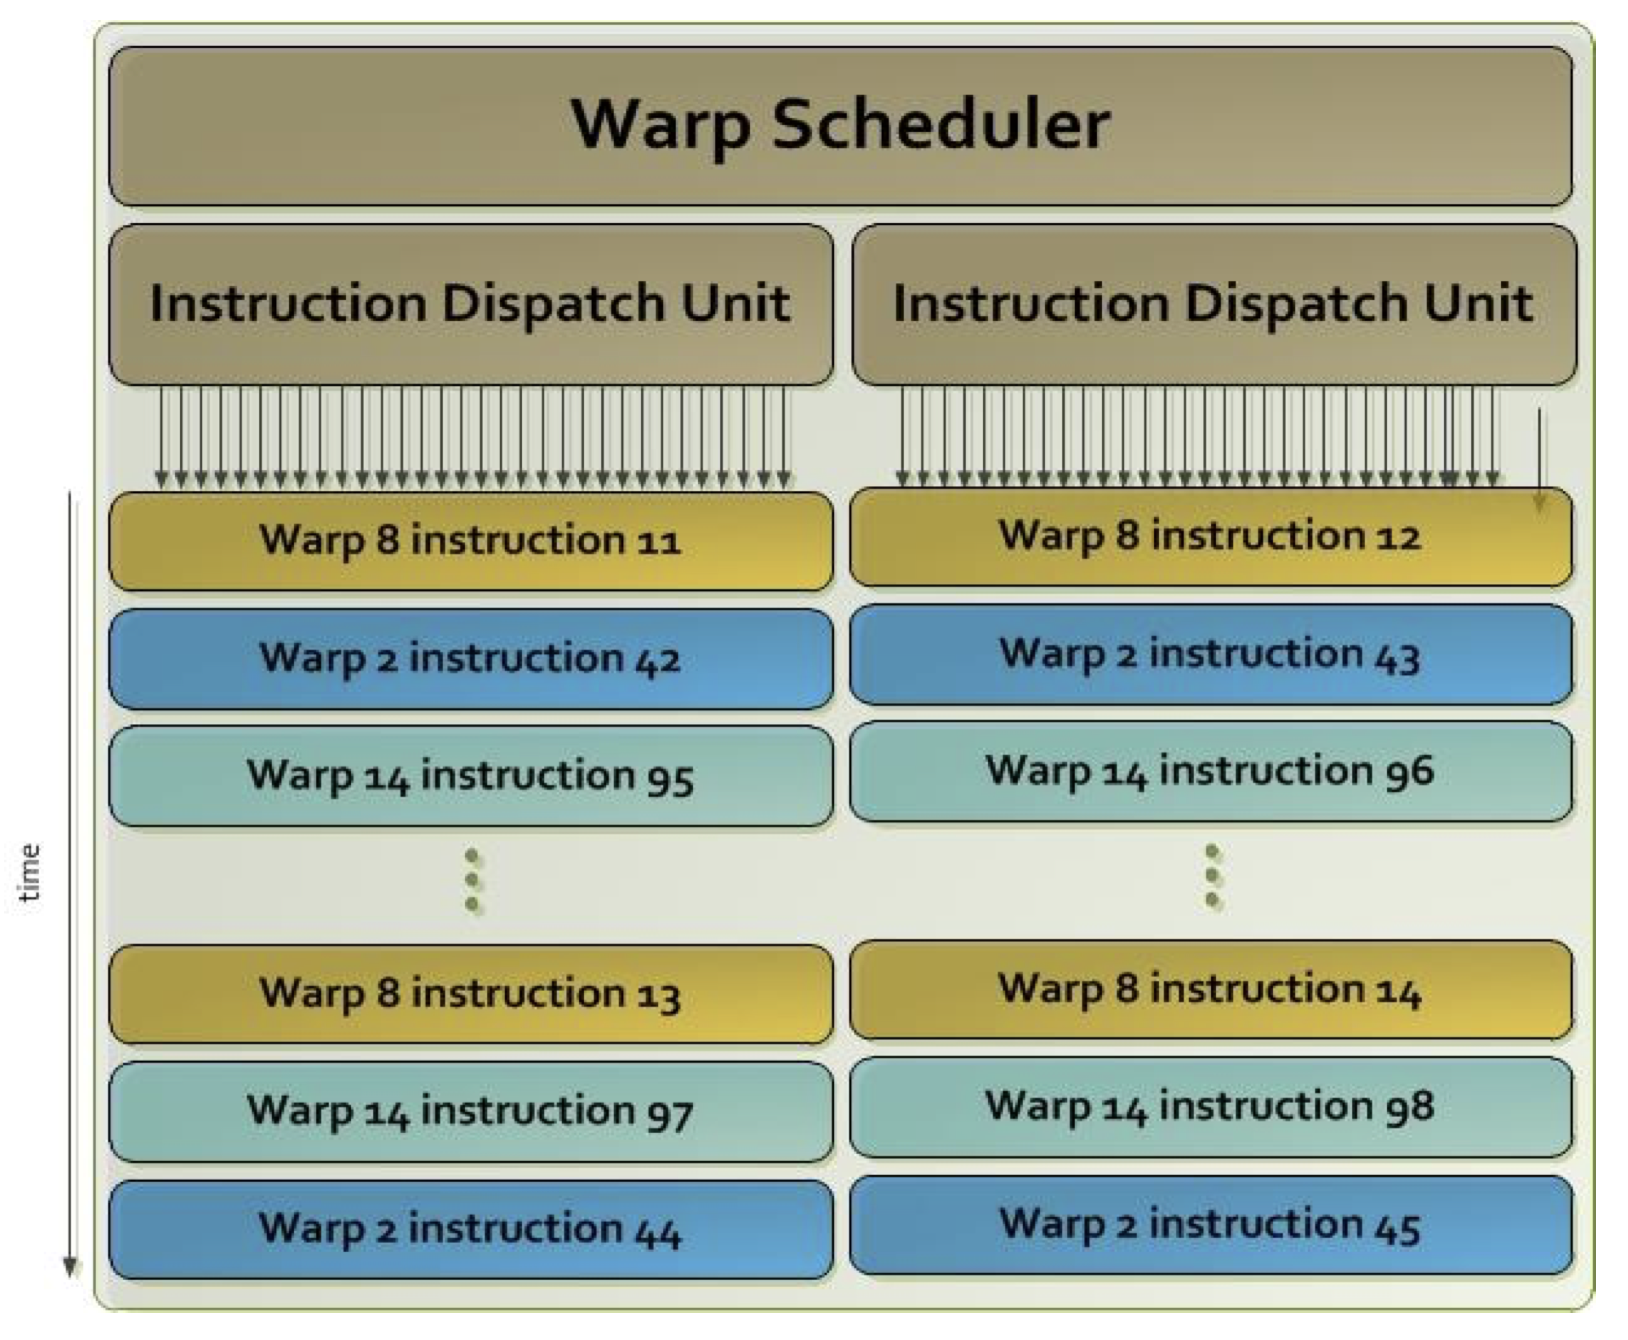 Warp scheduler